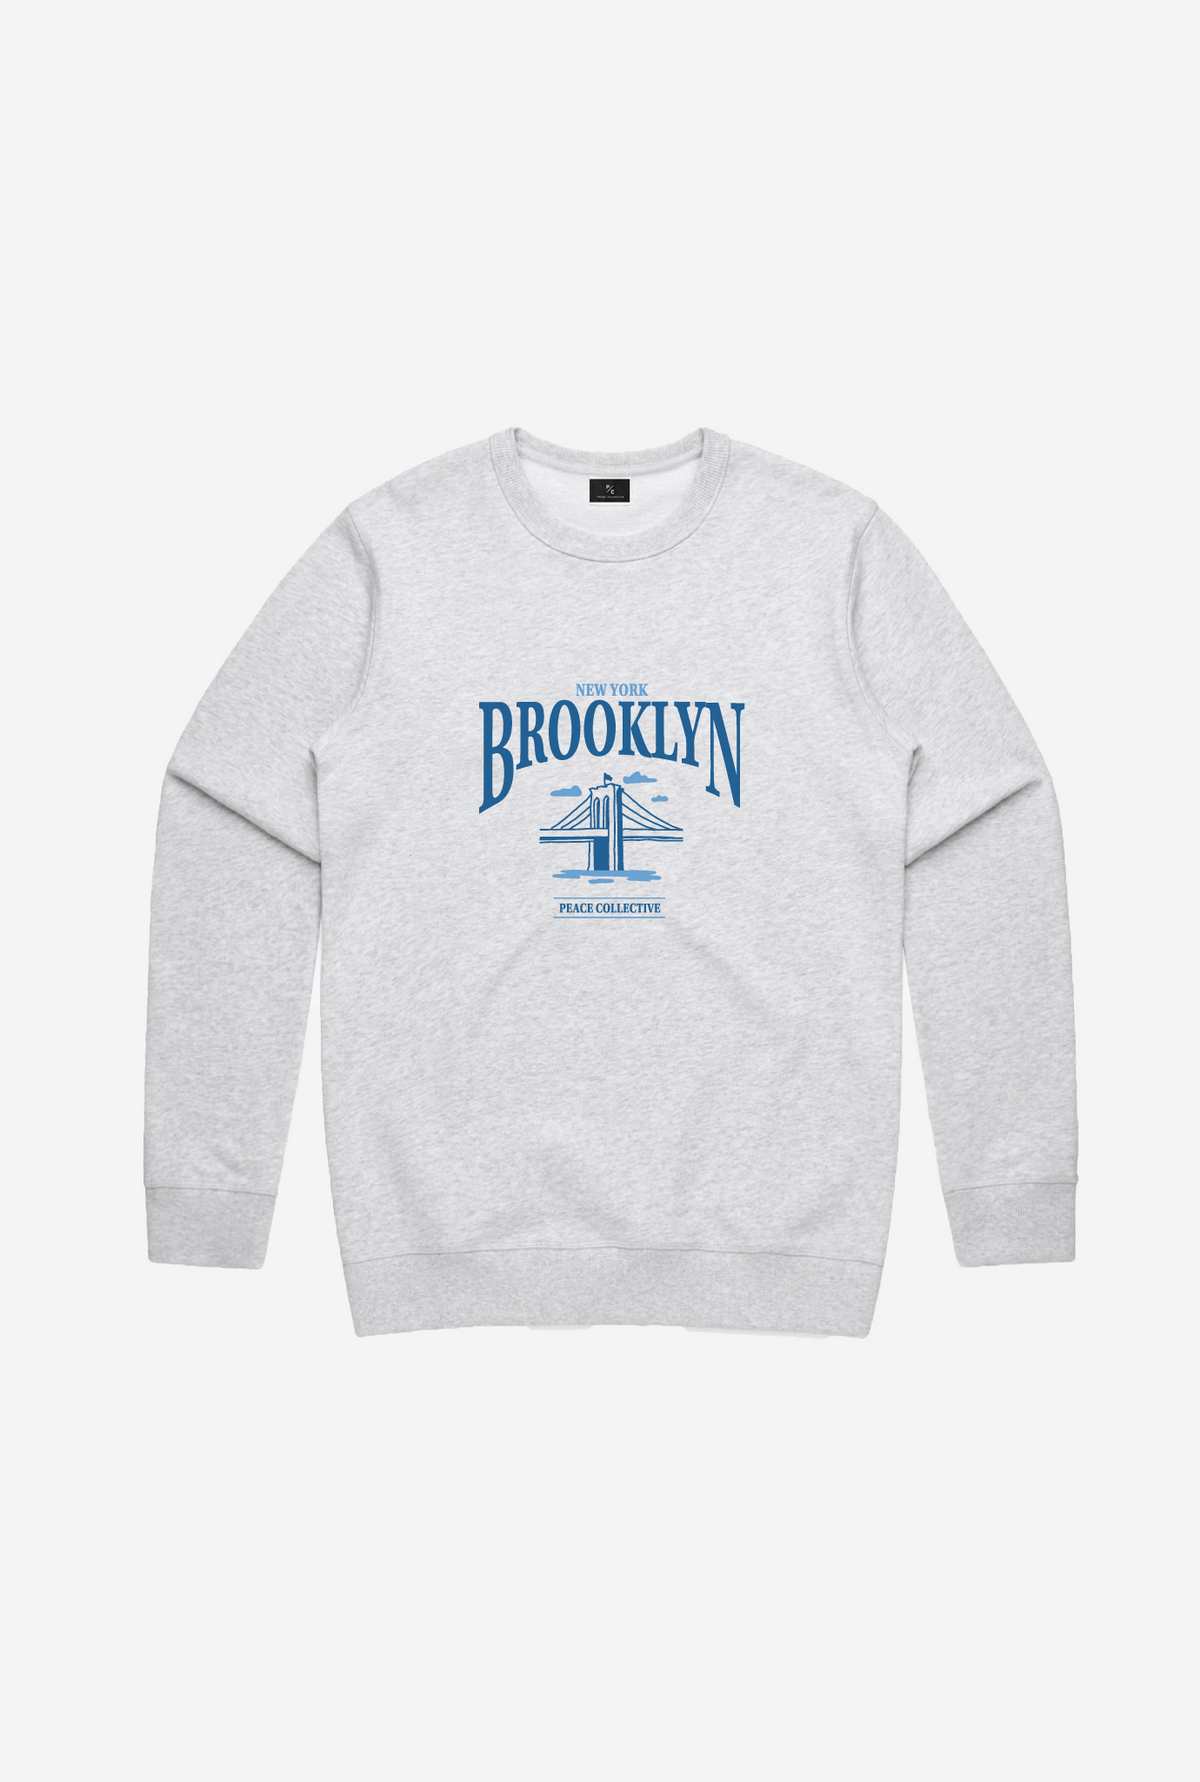 Brooklyn Vintage Crewneck - Ash